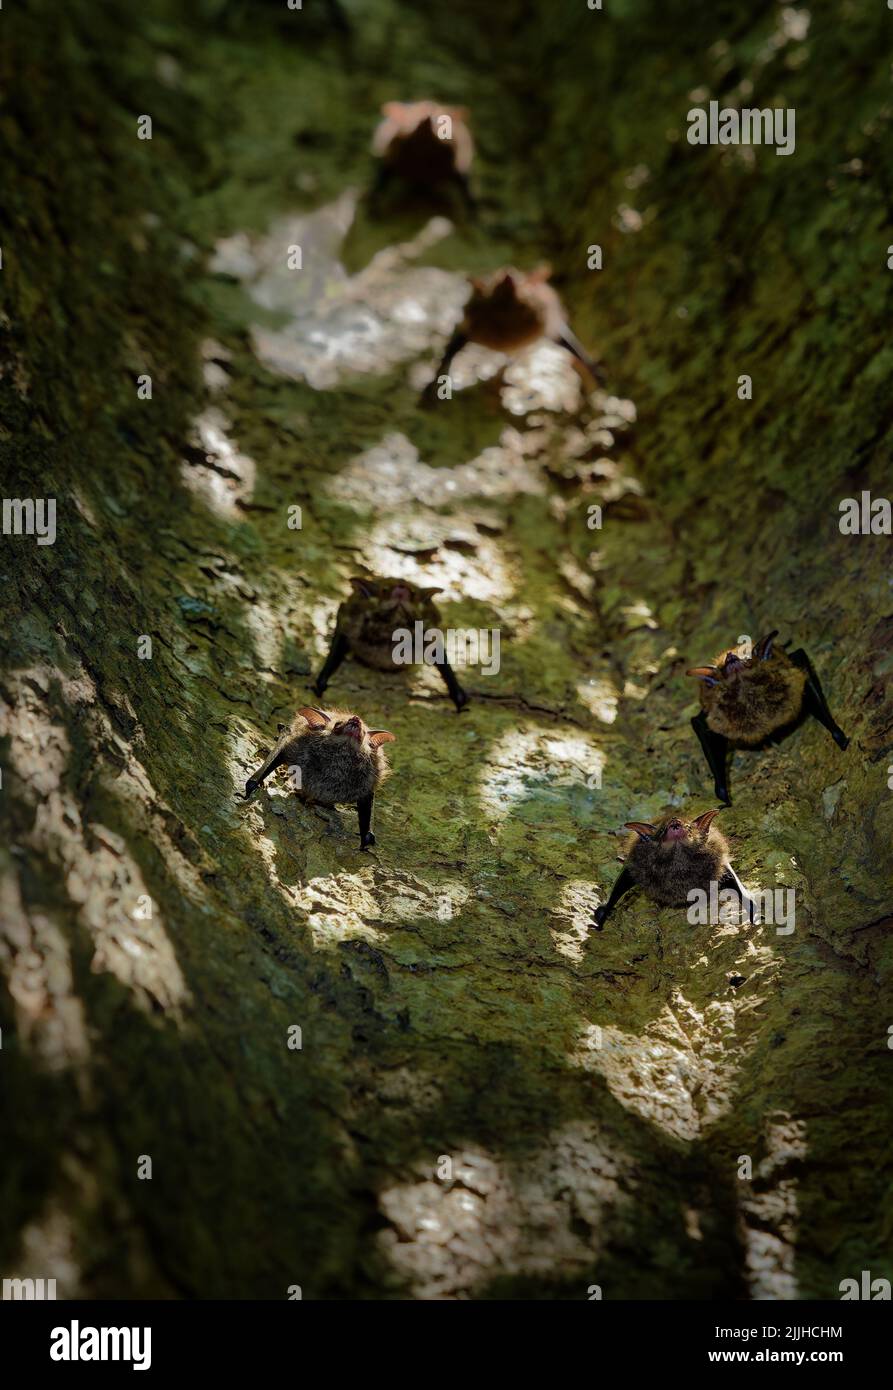 Gran colonia de murciélagos alados en saco (Saccopteryx bilineata) sentada en el tronco del árbol. Murciélagos tropicales capturados desde abajo en Costa Rica y Ecuador. Foto de stock